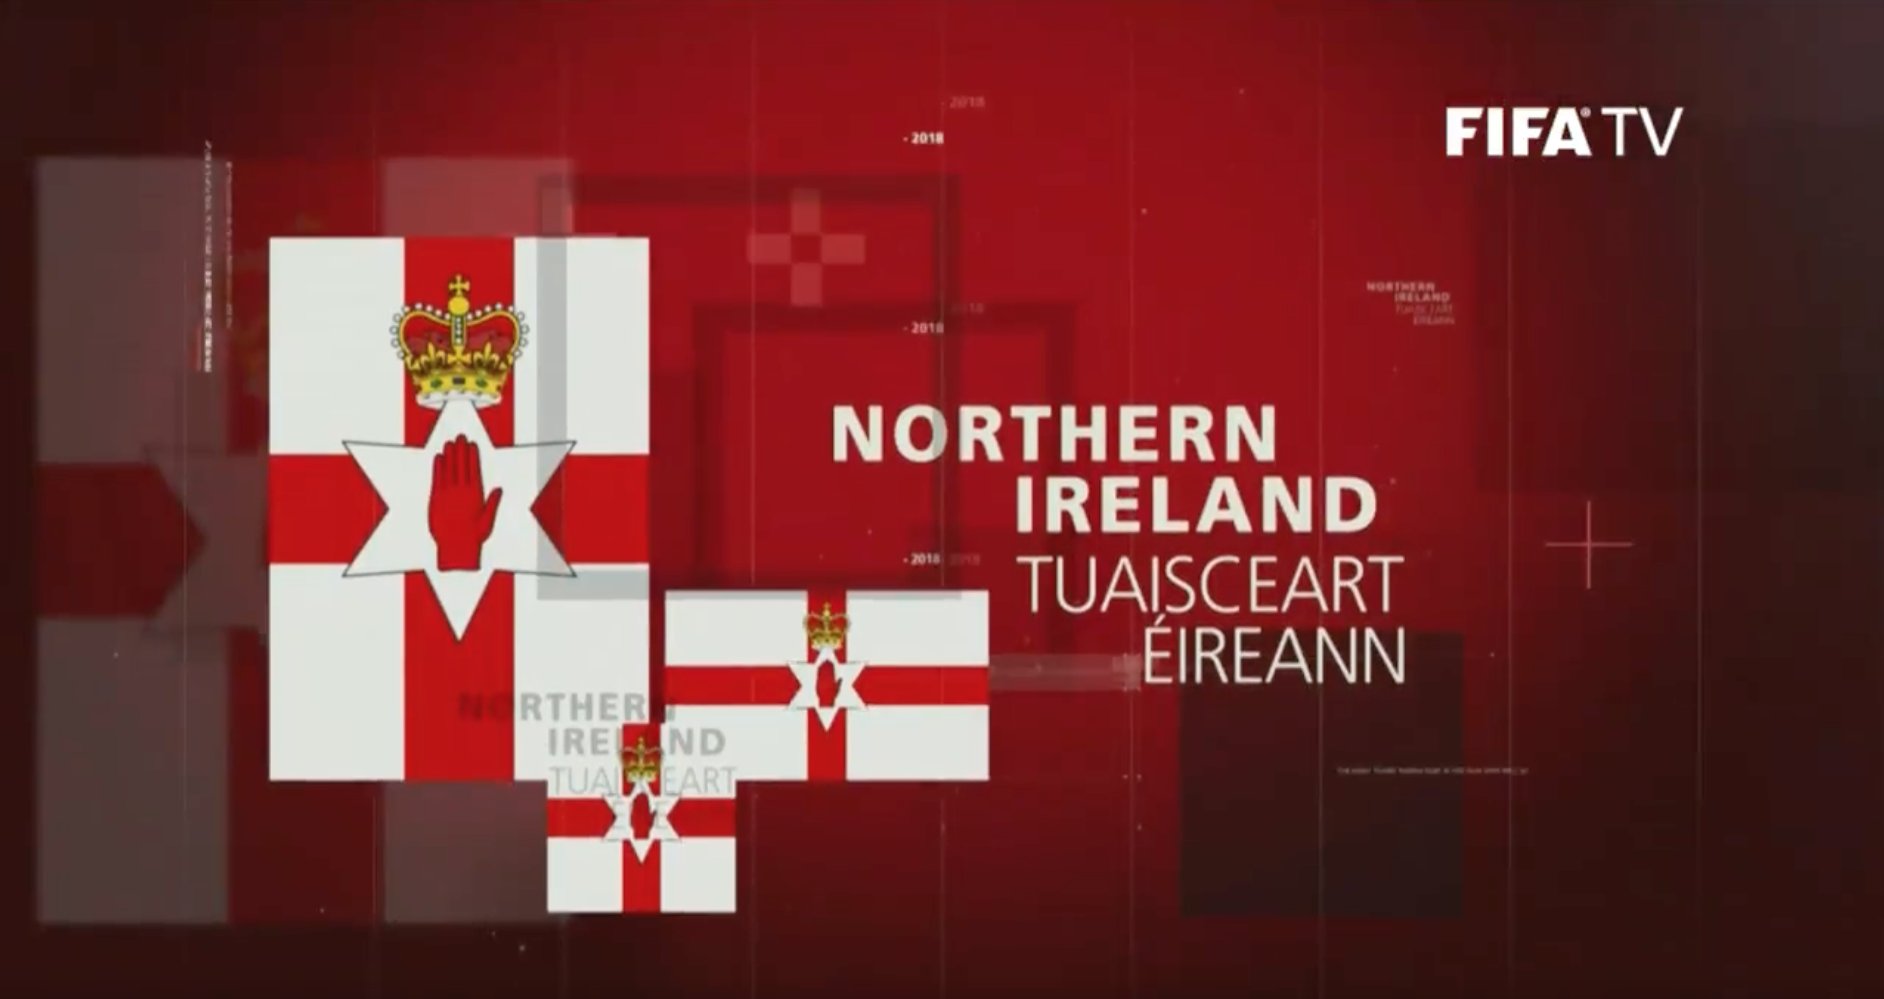 ‘Botún’ a bhí ann Gaeilge a chur ar ‘Northern Ireland’, a deir FIFA